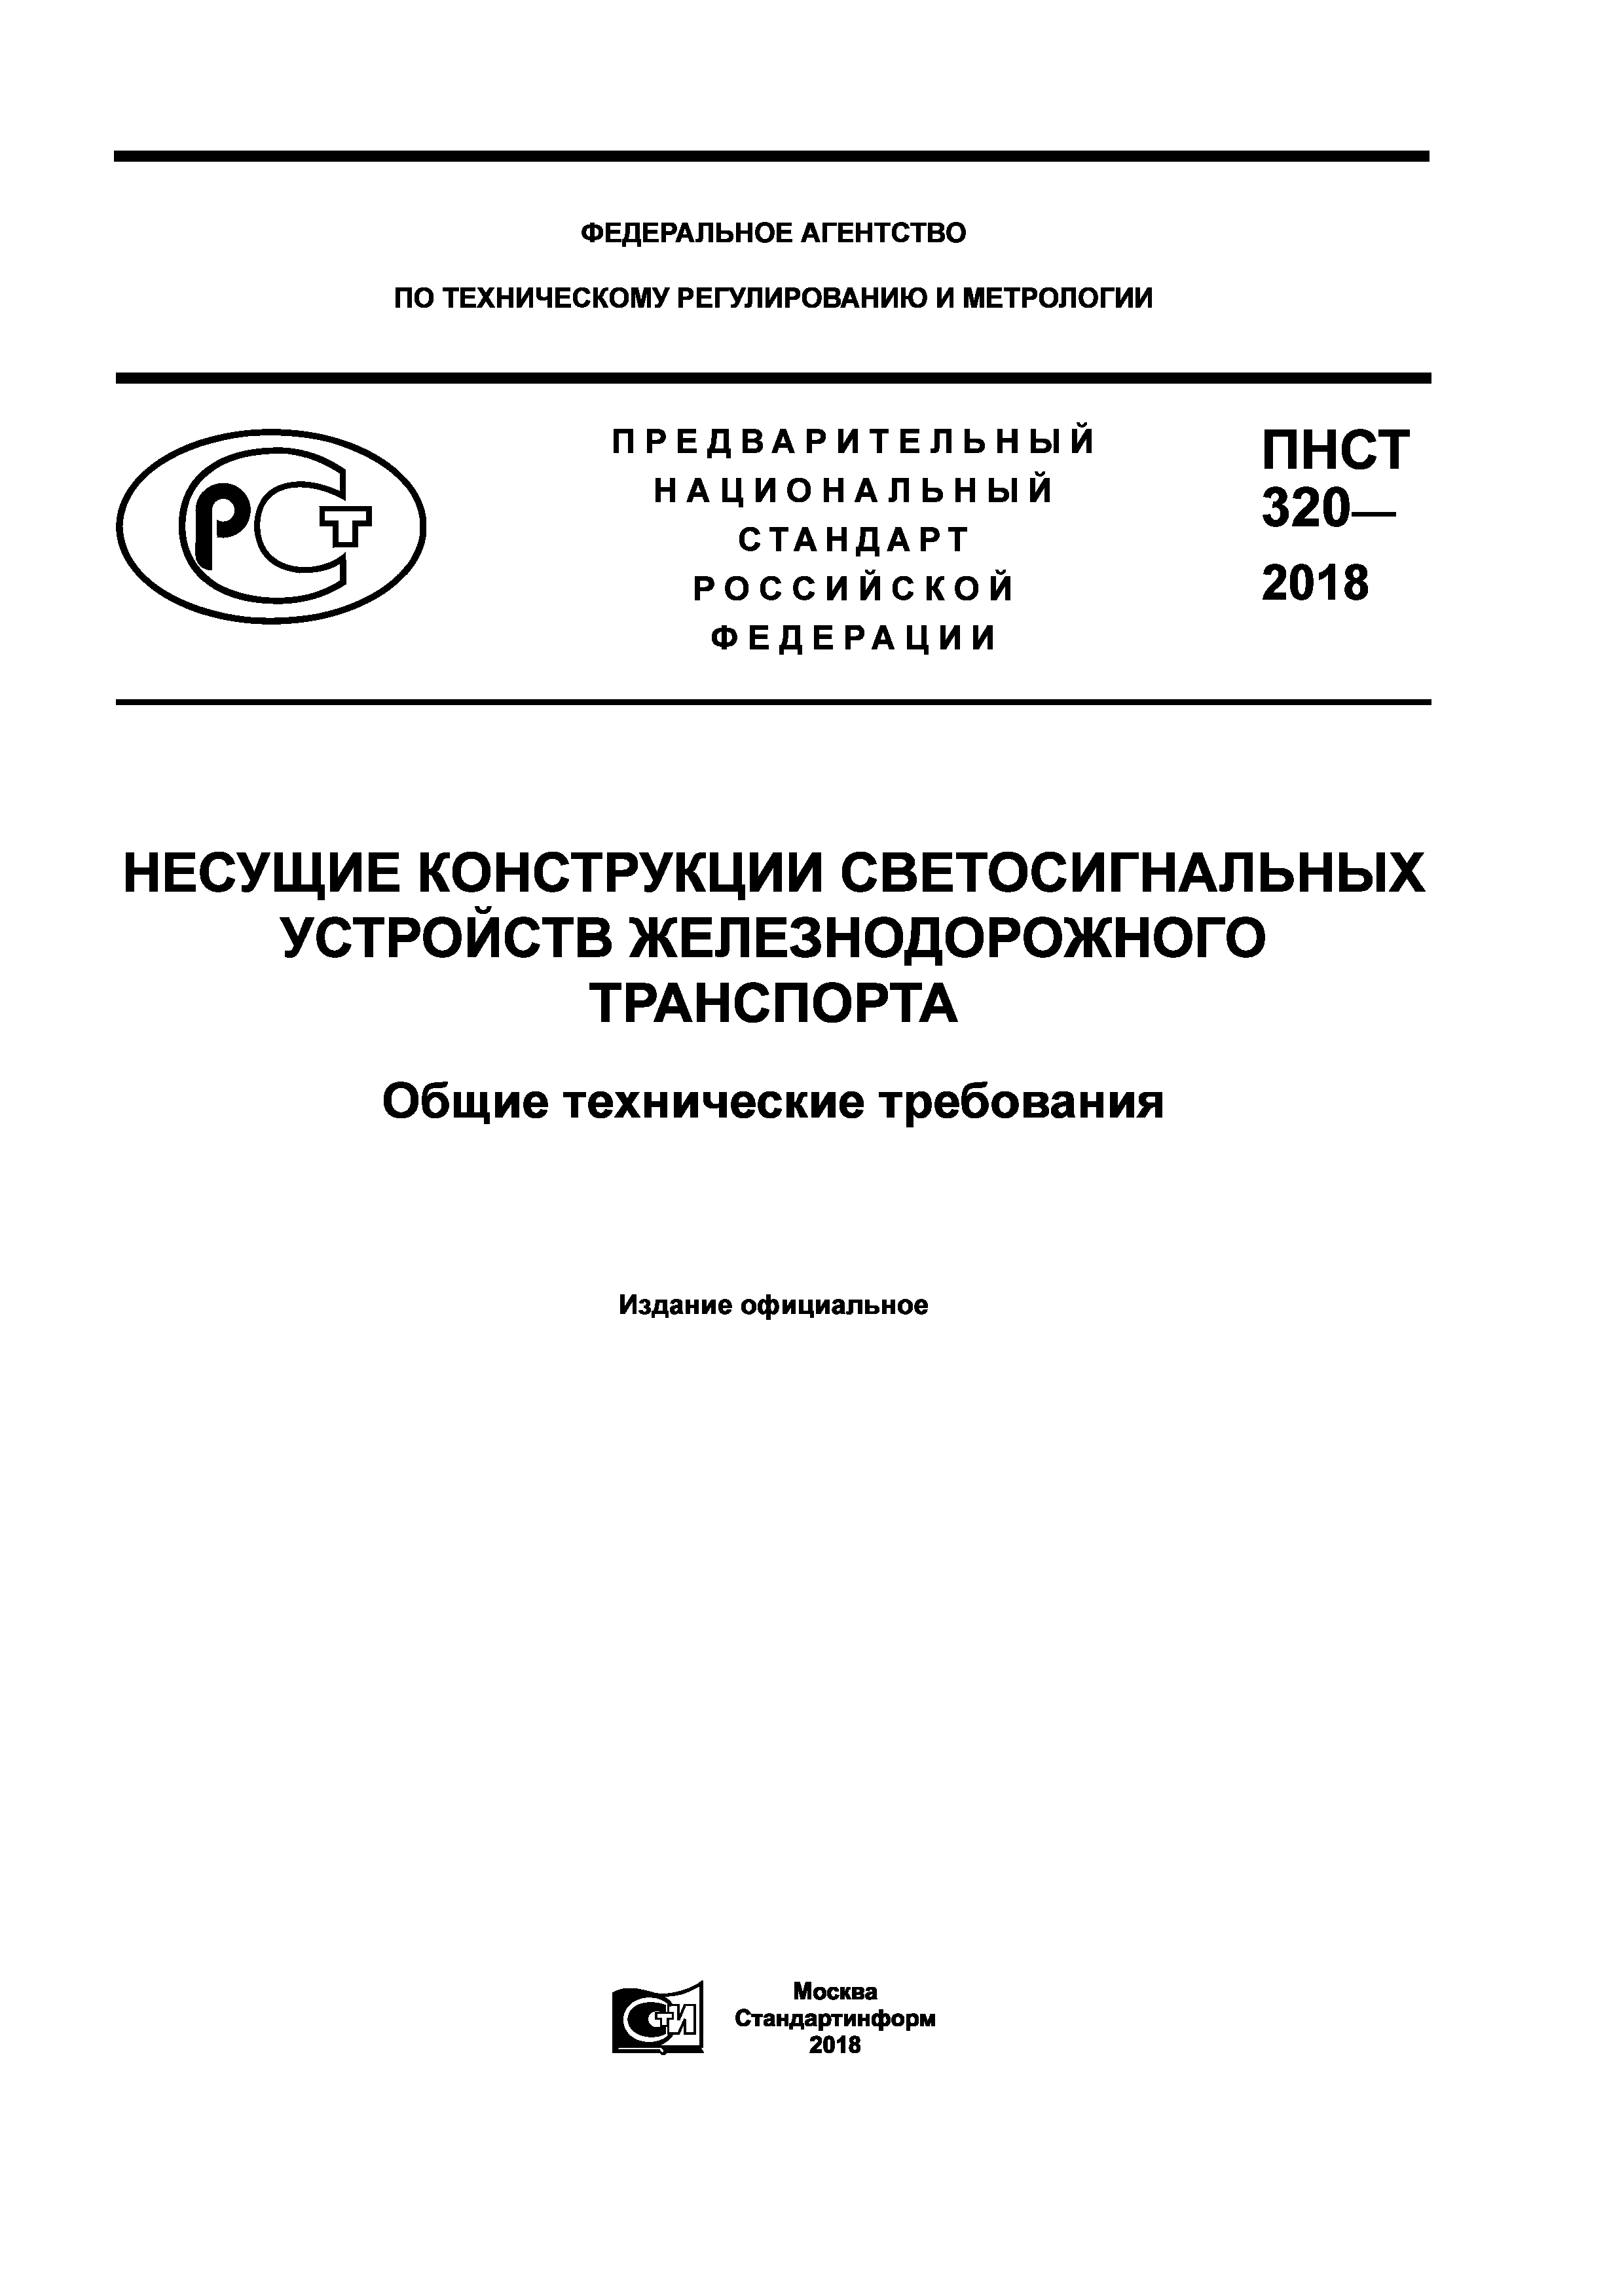 ПНСТ 320-2018